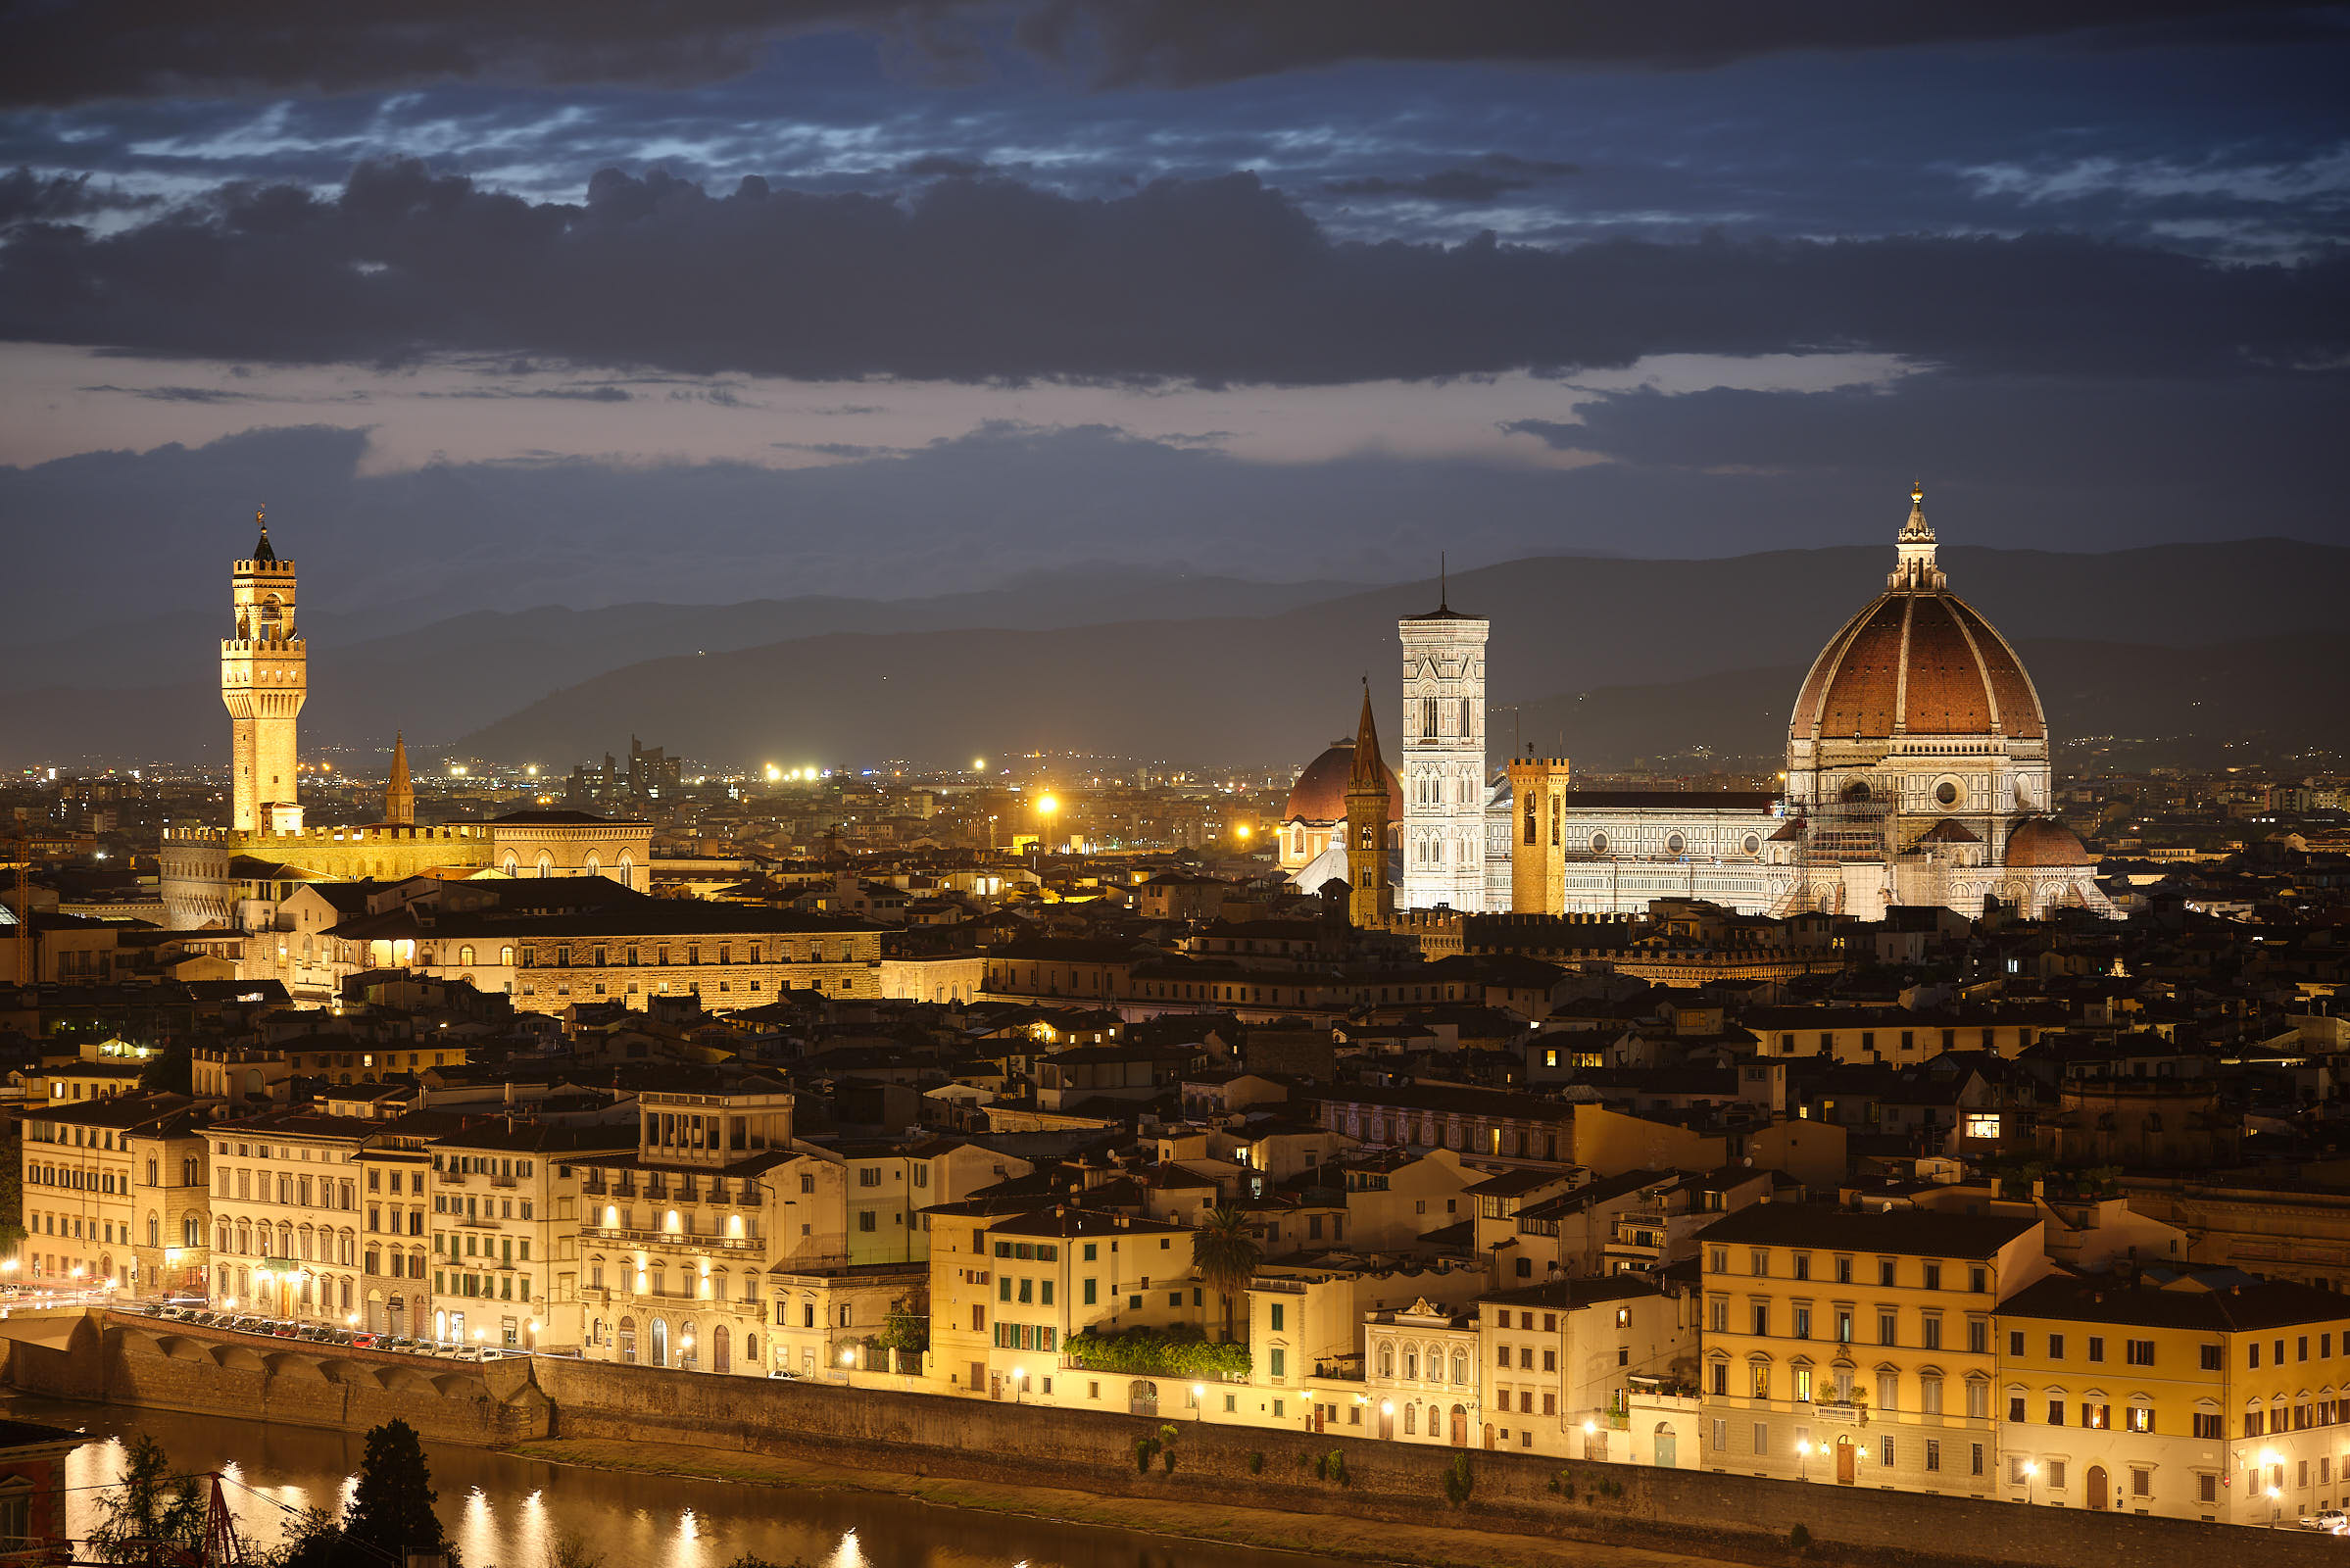 Duomo Florence at sunset